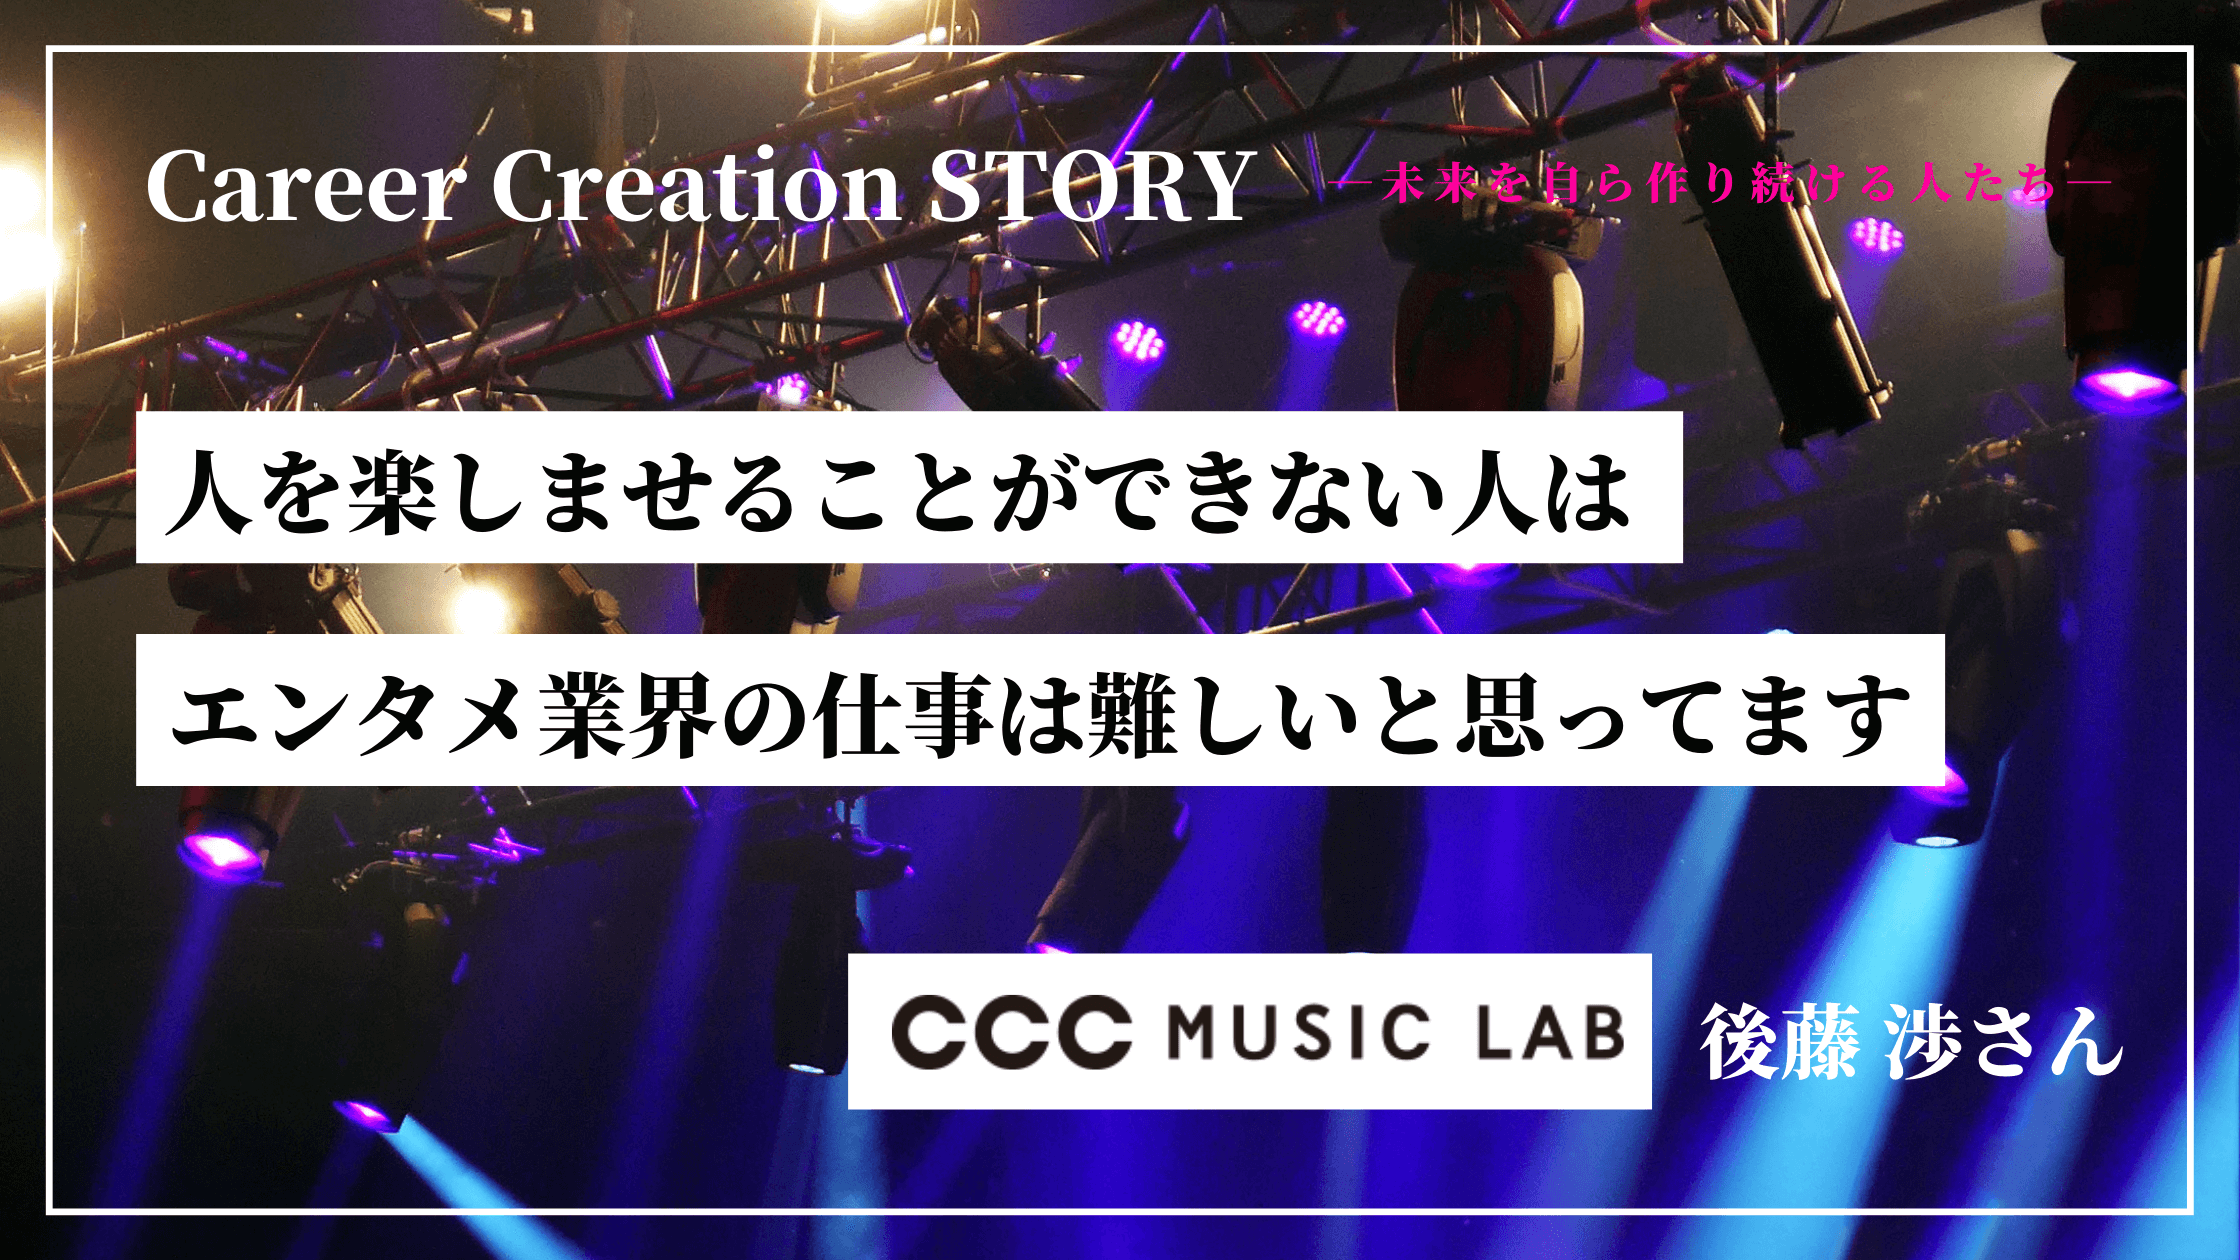 Career Creation STORY #9：（株）ネオグラフィック 村井亜衣さん